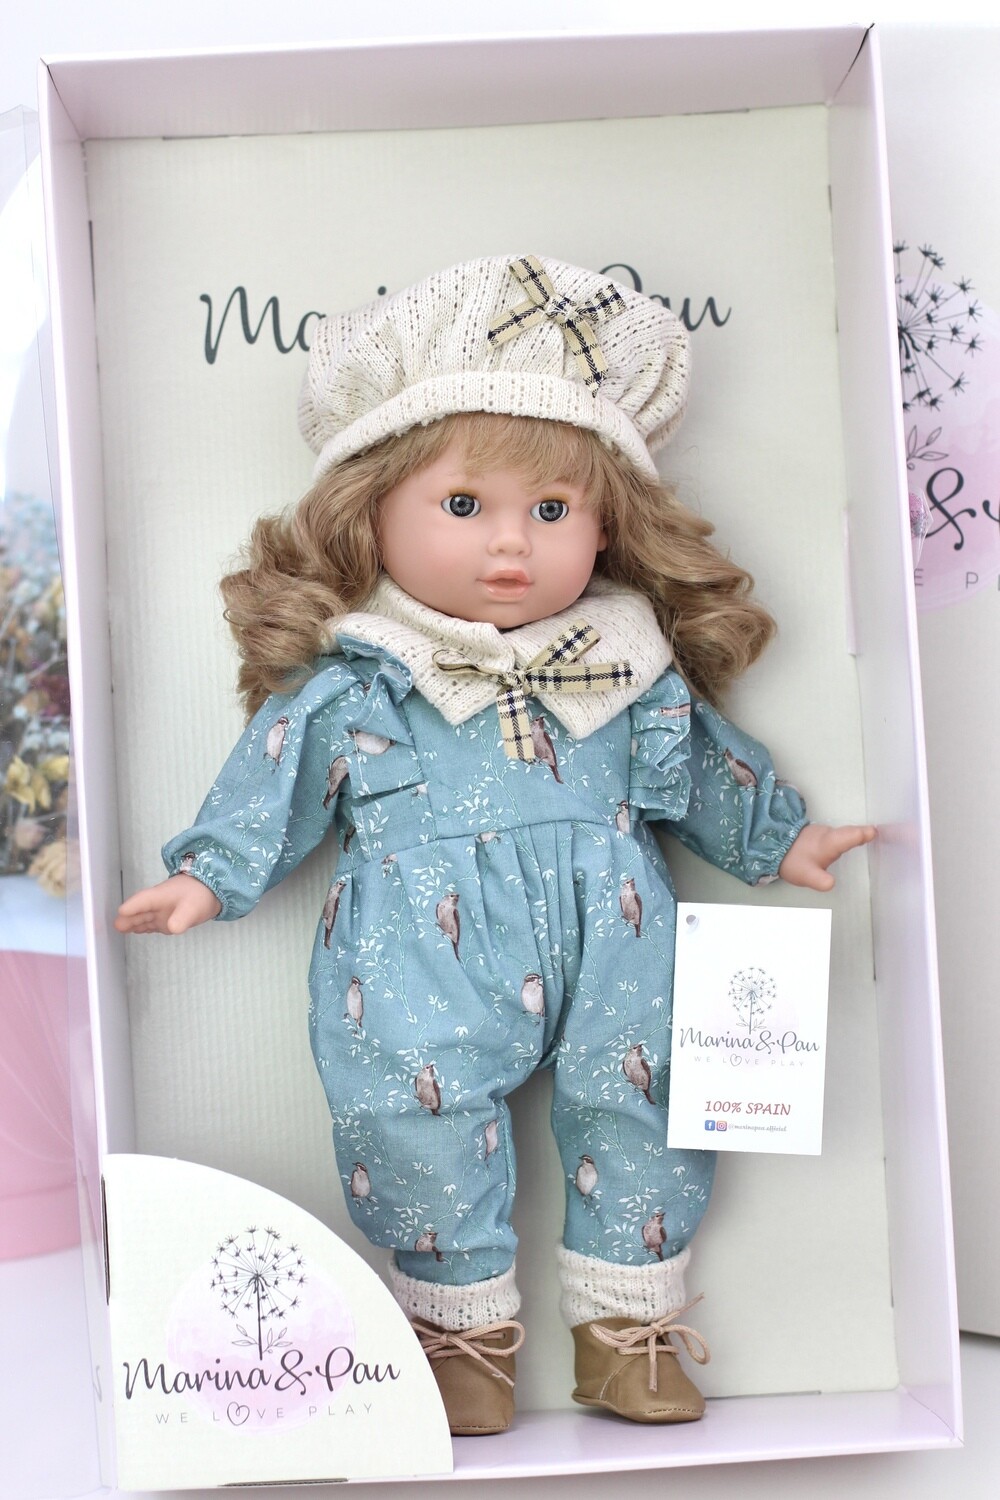 Кукла мягконабивная Тина с закрывающимися глазками, Marina&Pau, 42 см. Фирменная коробка